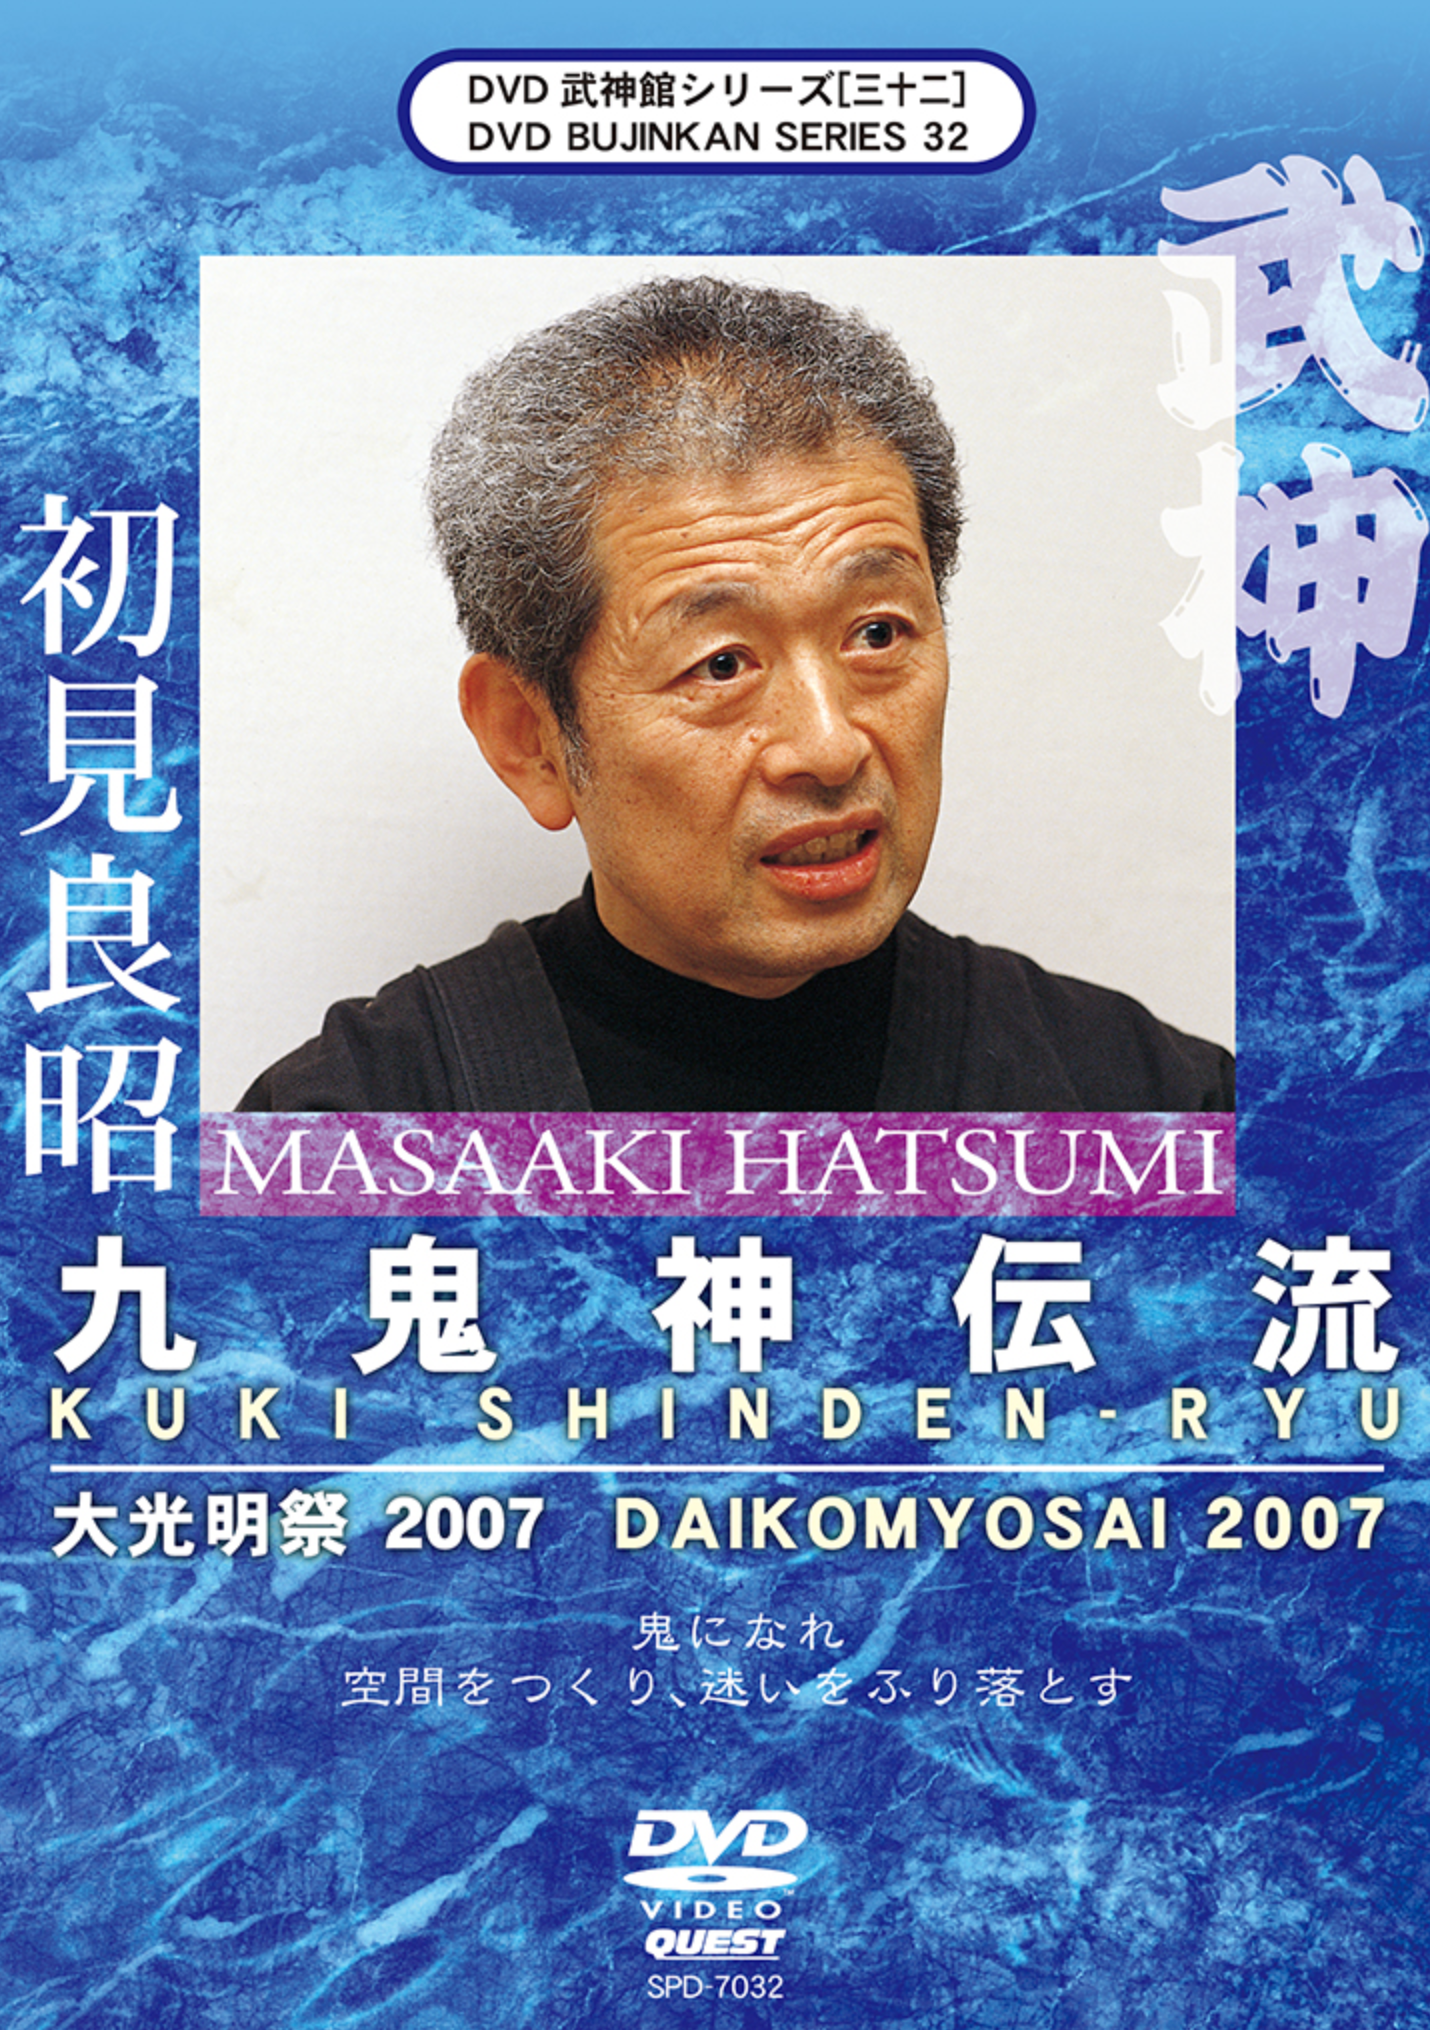 Bujinkan DVD Series 32: Kuki Shinden Ryu with Masaaki Hatsumi - Budovideos Inc